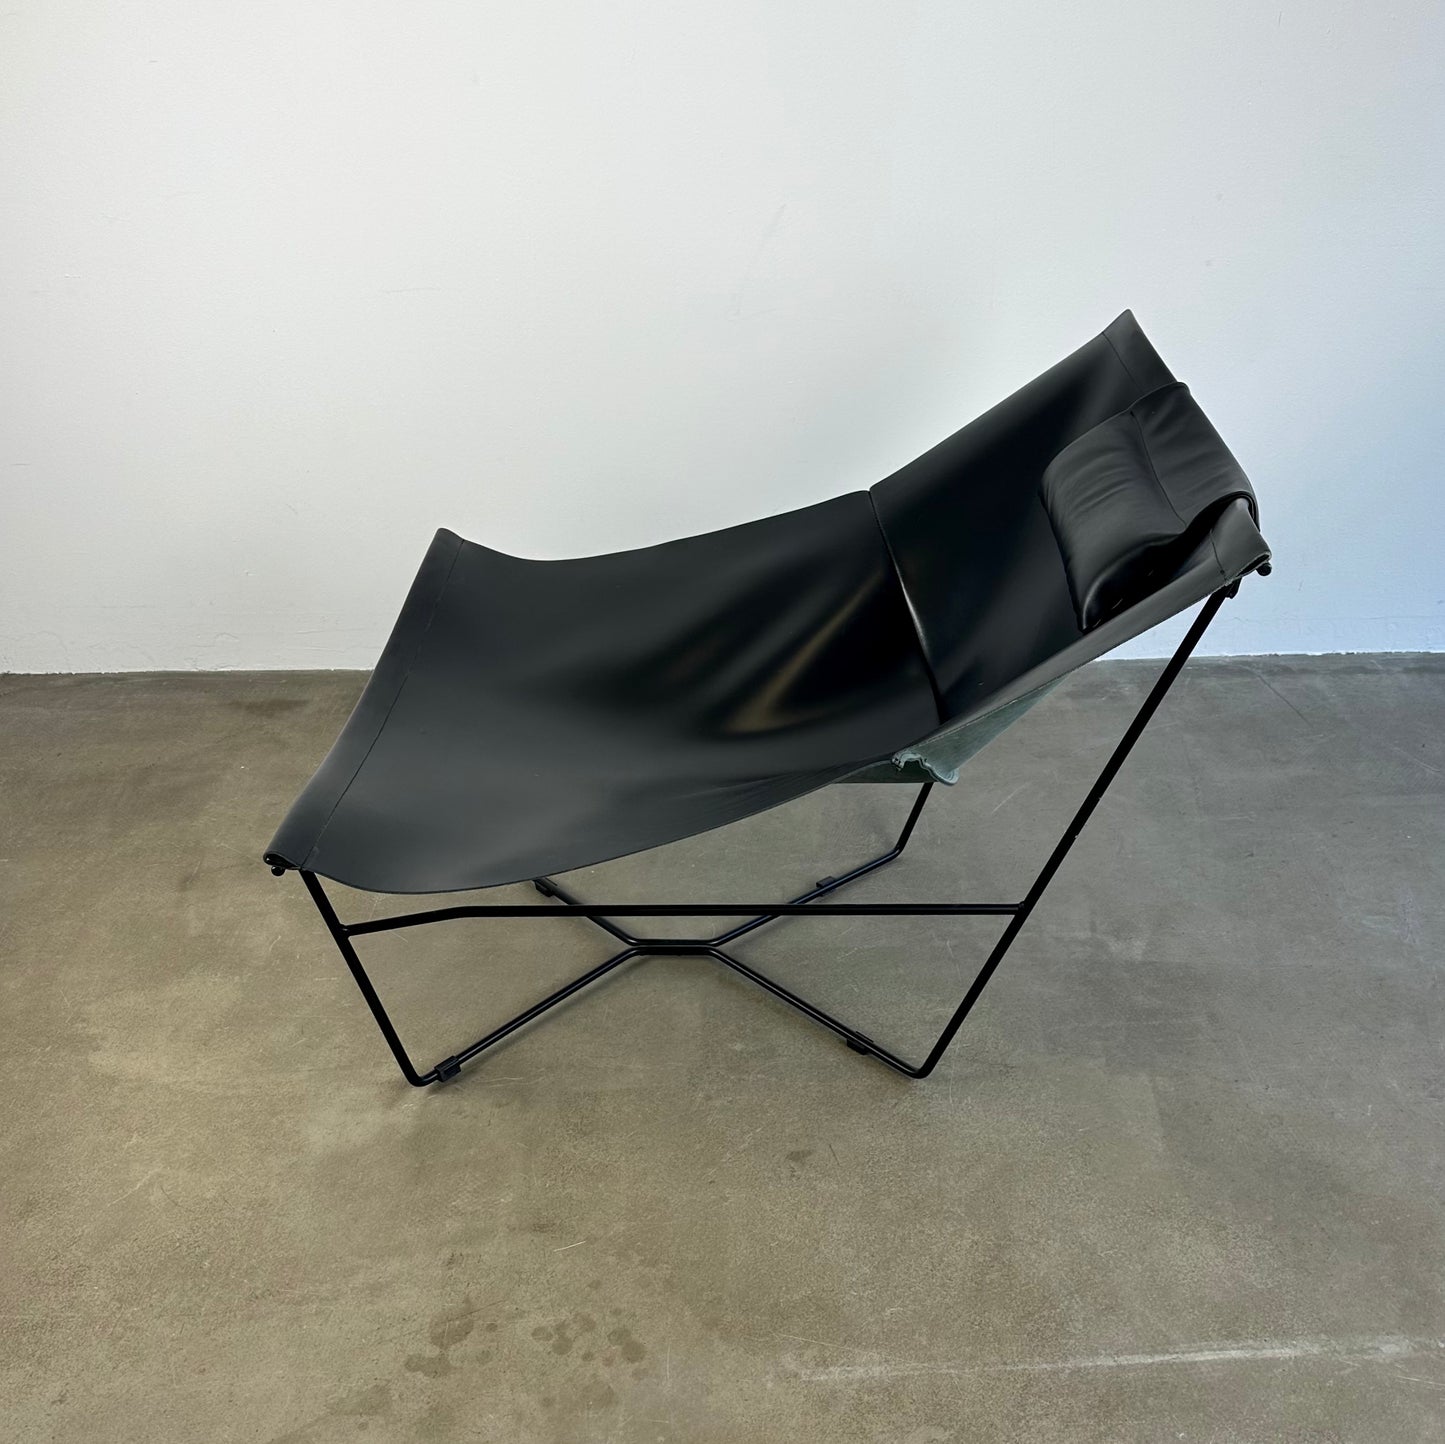 Semana lounge chair by David Weeks